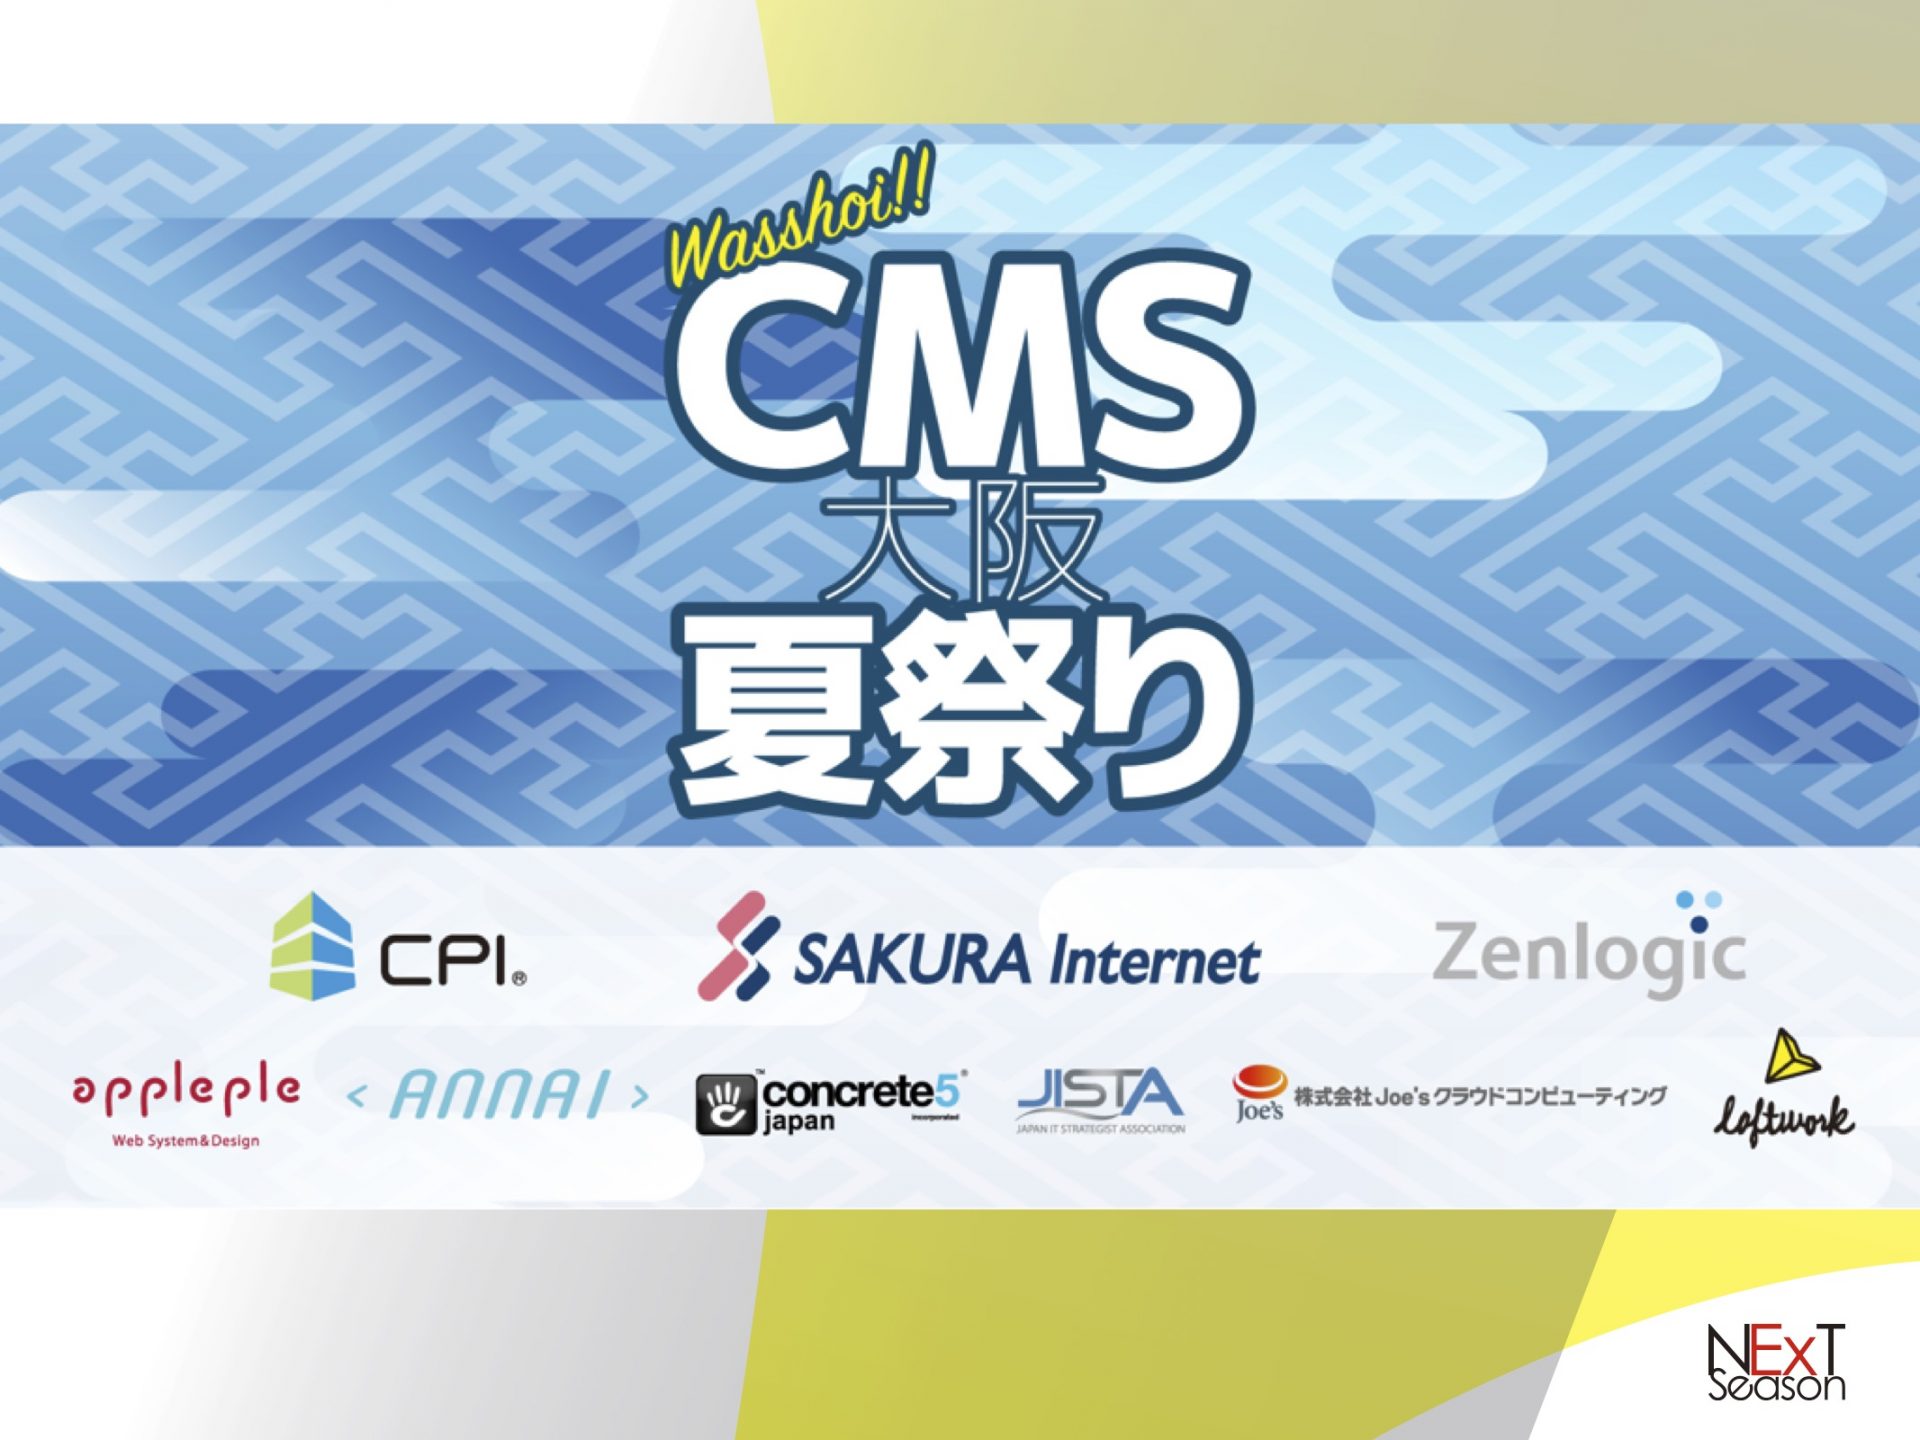 CMS大阪夏祭り2016_MODX